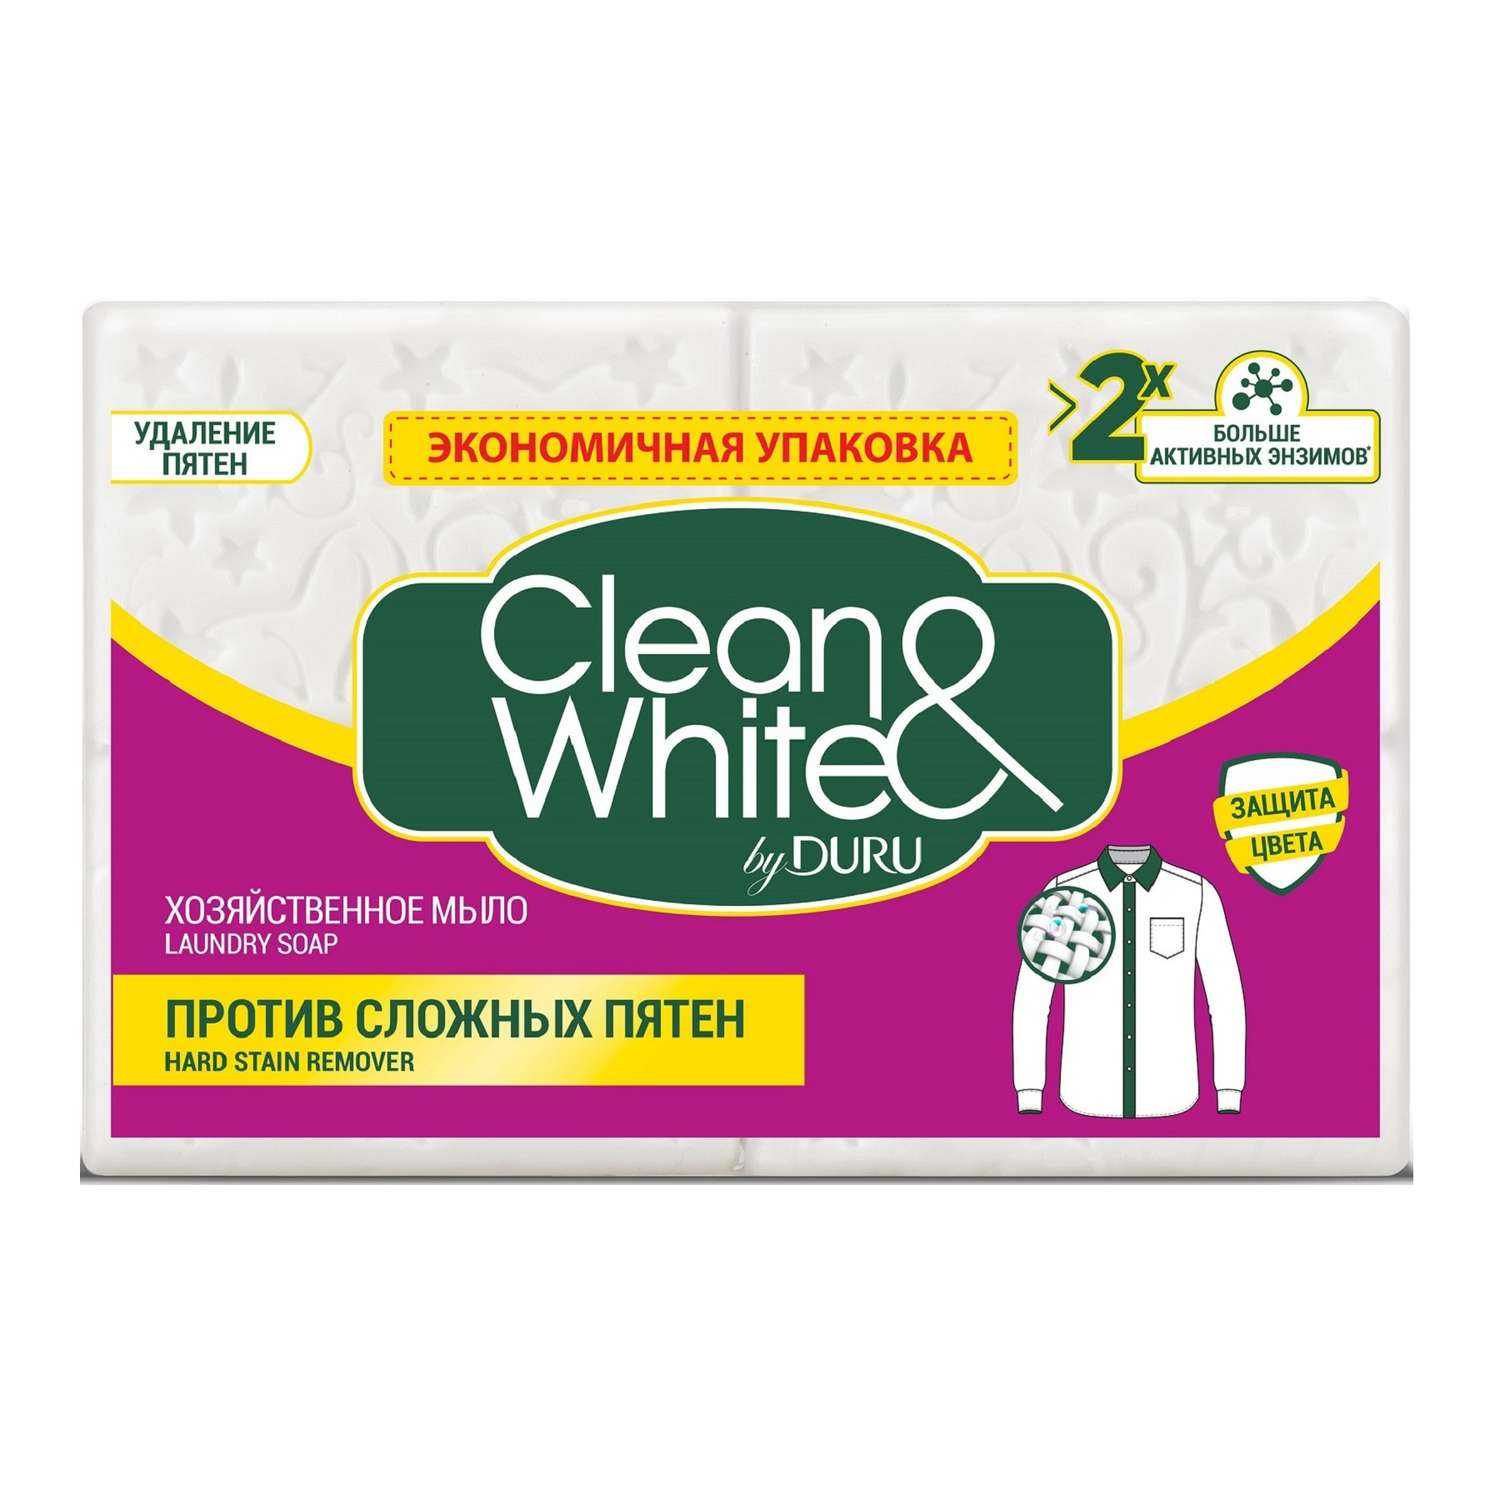 Мыло хозяйственное DURU Clean White против сложных пятен 4 шт по 125 г - фото 1